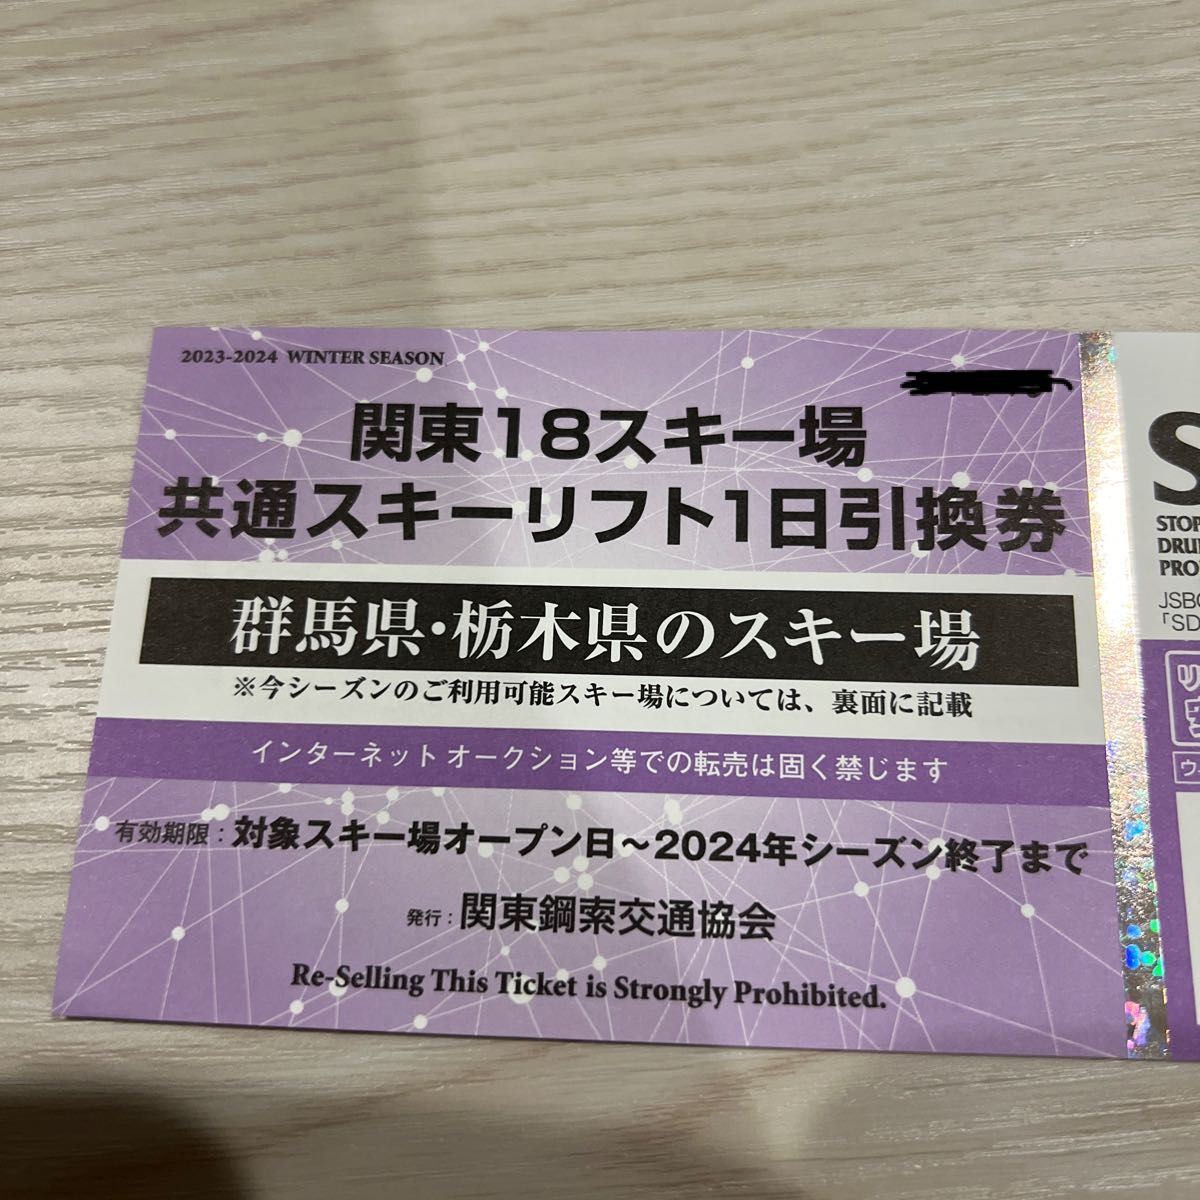 関東18スキー場共通リフト引換券 - ウィンタースポーツ